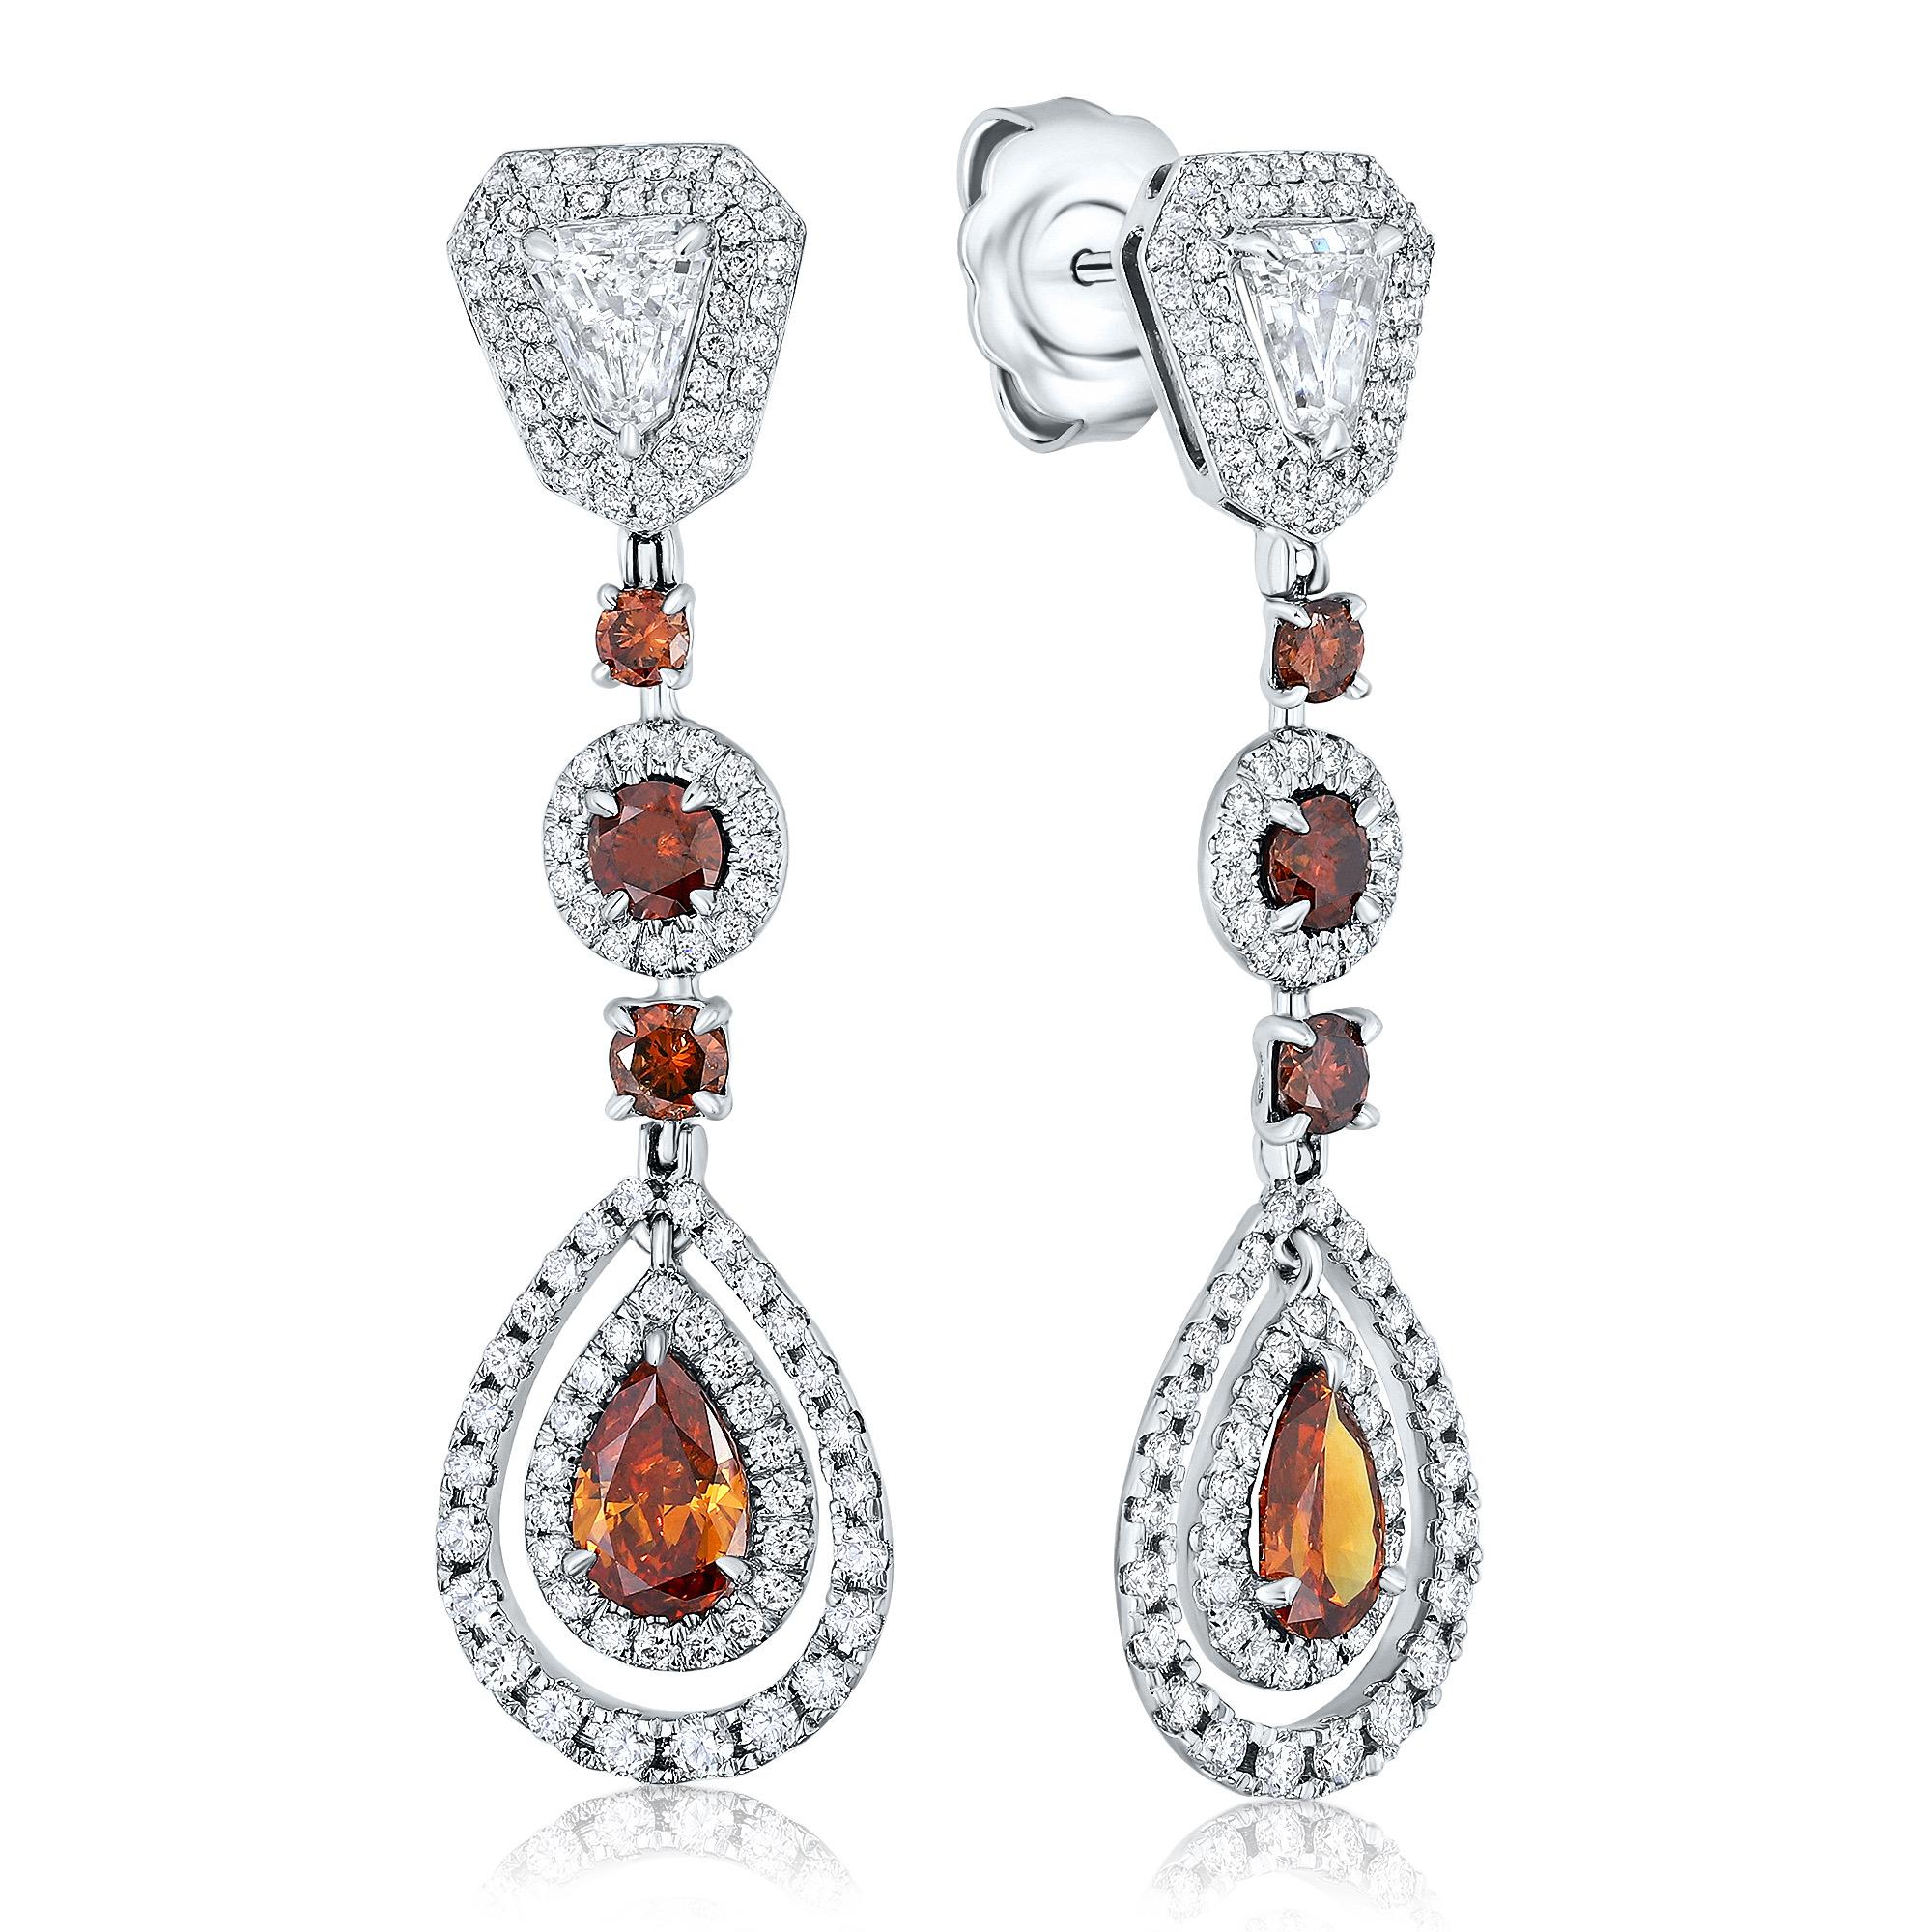 Wir präsentieren ein atemberaubendes Paar tropfenförmige Diamantohrringe, die mit Sicherheit ein Statement setzen werden. Diese Ohrringe zeichnen sich durch einen lebhaften Mix aus acht braunen Diamanten mit einem Gewicht von ca. 2,32 Karat und zwei